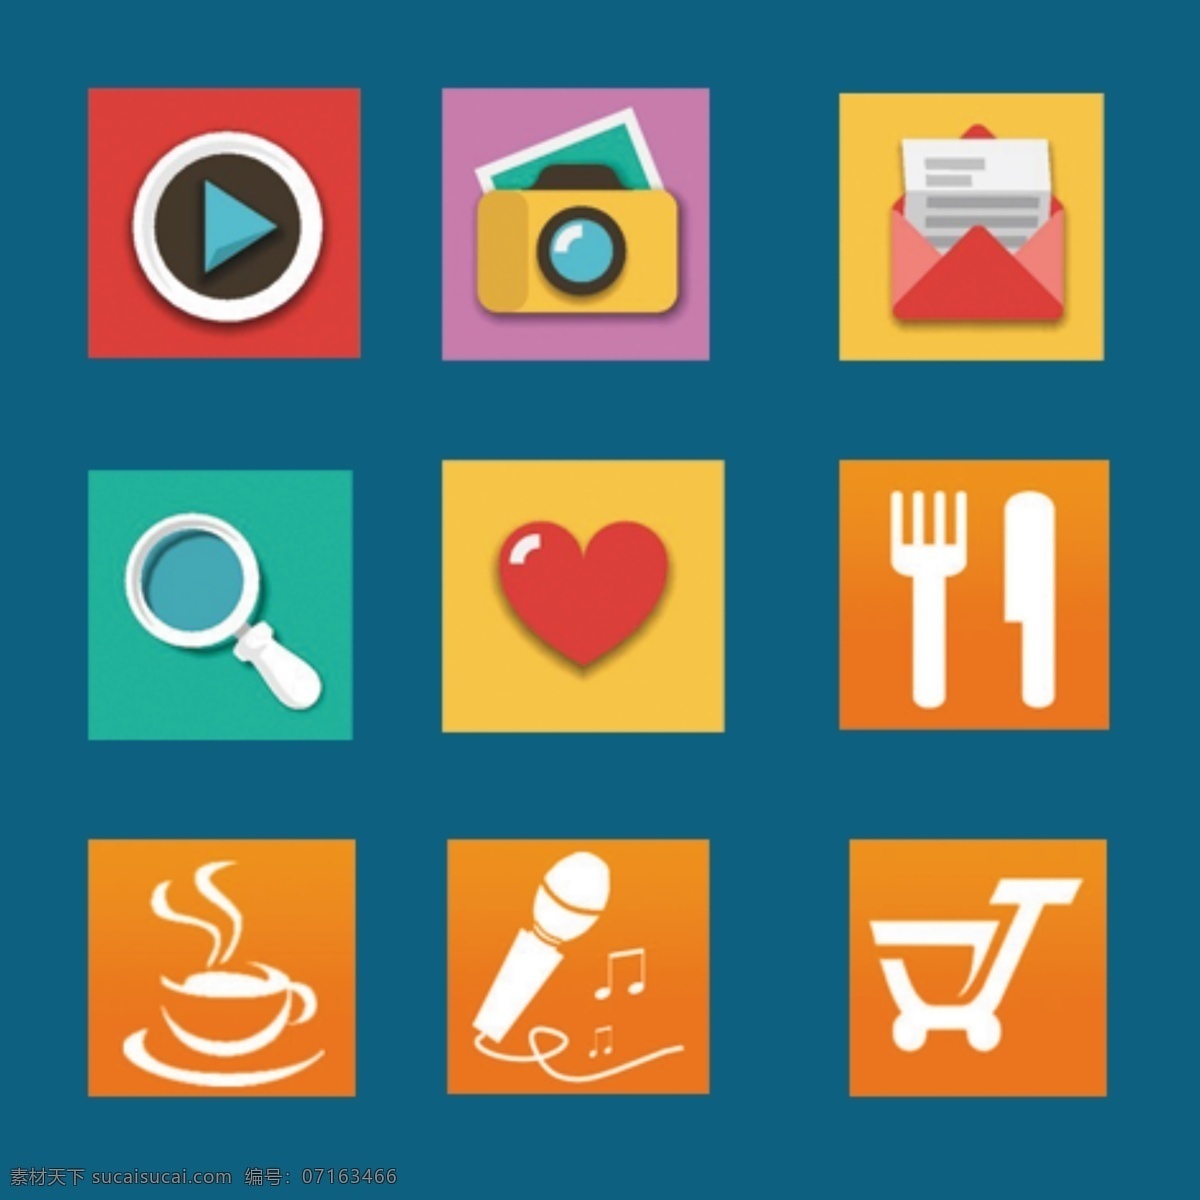 百科 图标 快播图标展示 饮食图标素材 k歌图标 购物图标展示 手机 app app图标